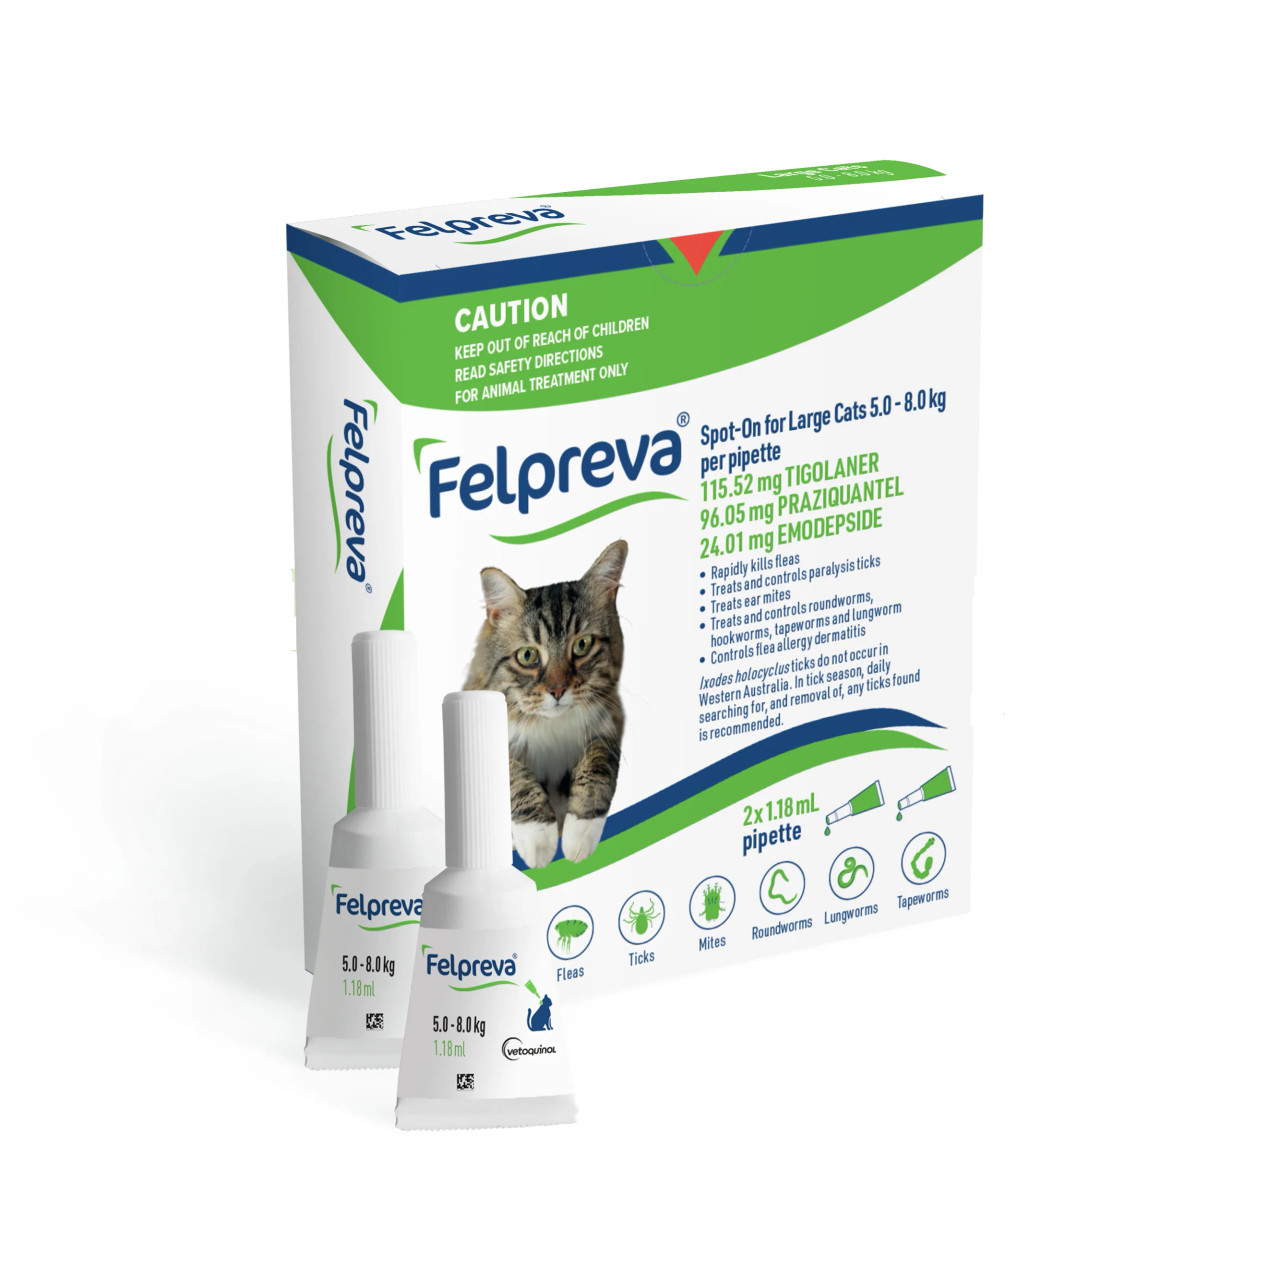 20% korting op Felpreva Spot-On voor grote katten 5-8kg (11.02-17.63 lbs) - 2PK bij Atlantic Pet Products